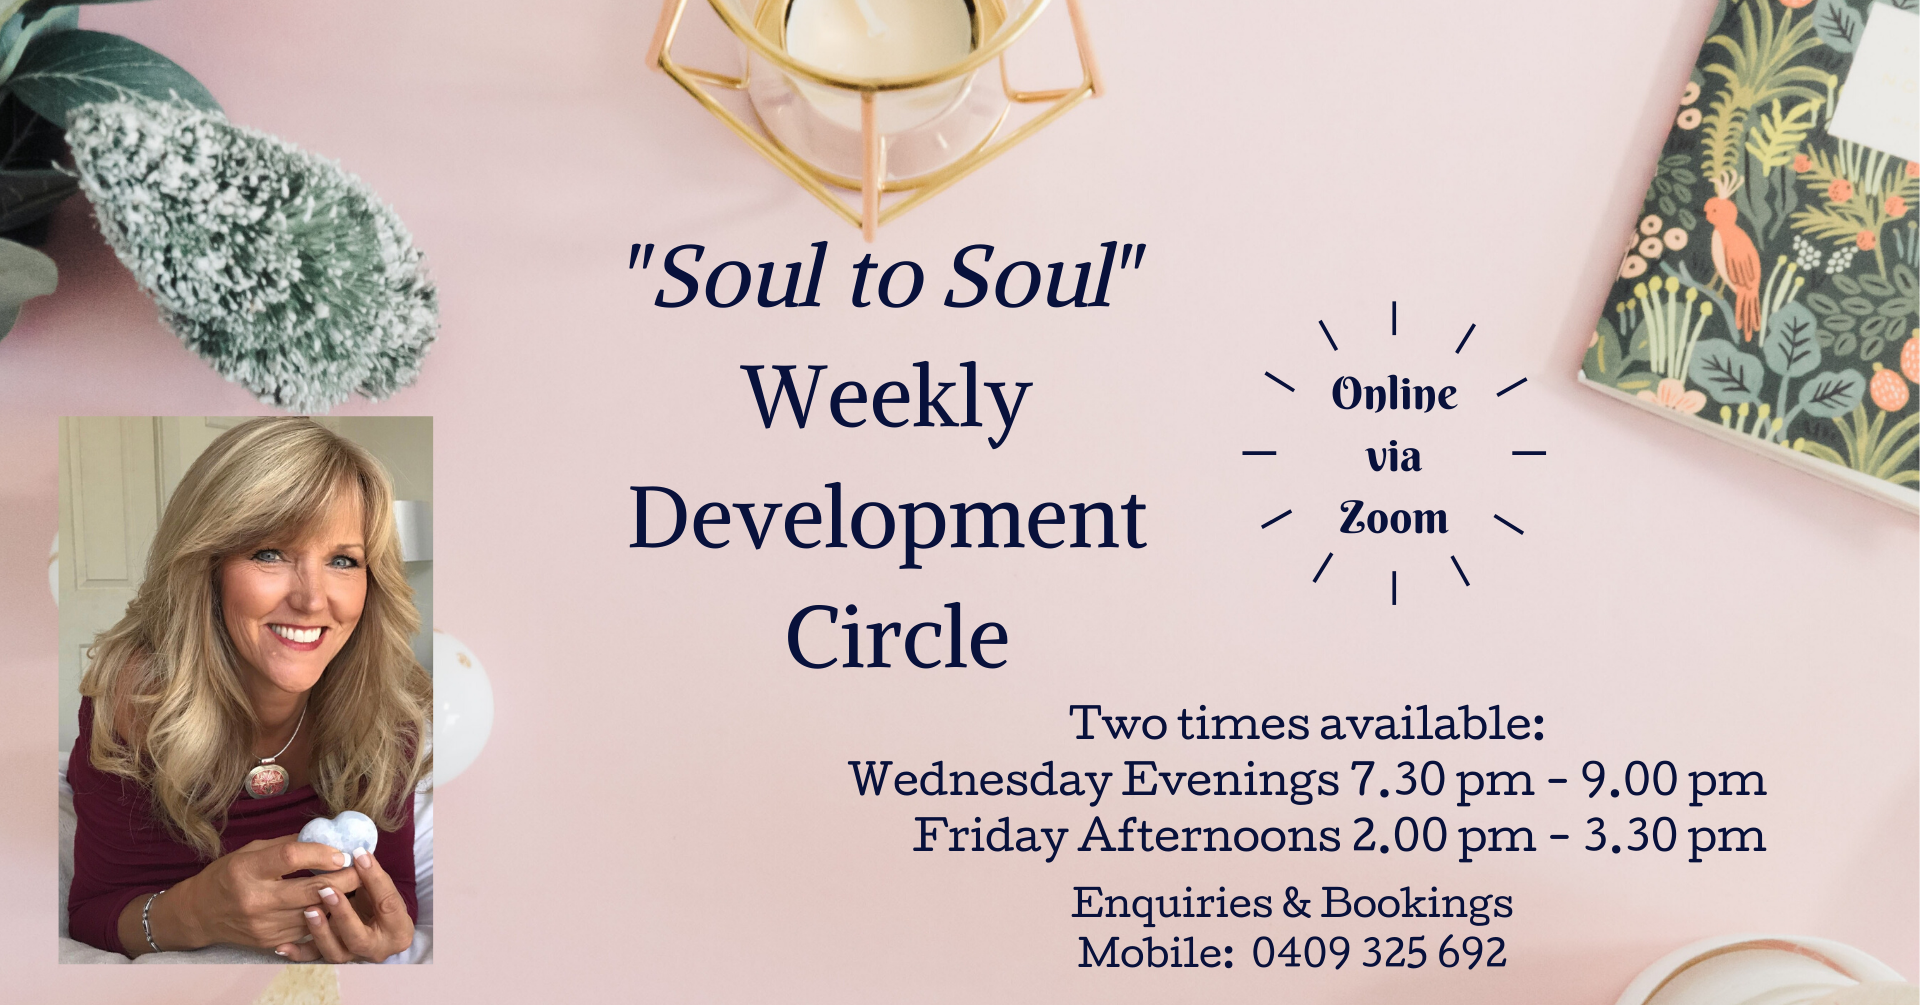 Online Soul to Soul Development Circle